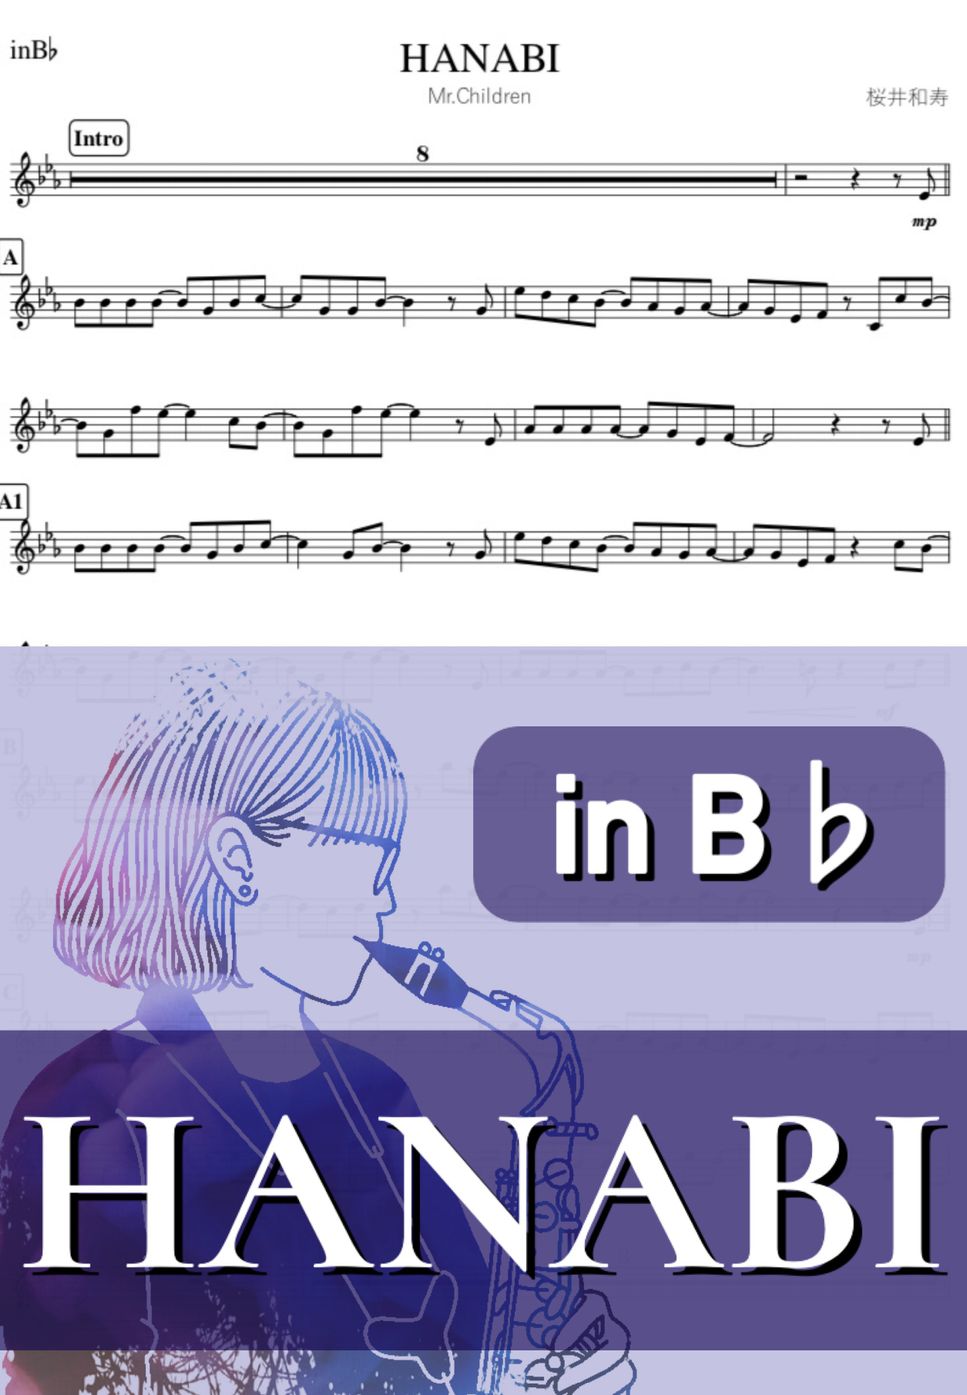 Mr.Children - HANABI (B♭) by kanamusic